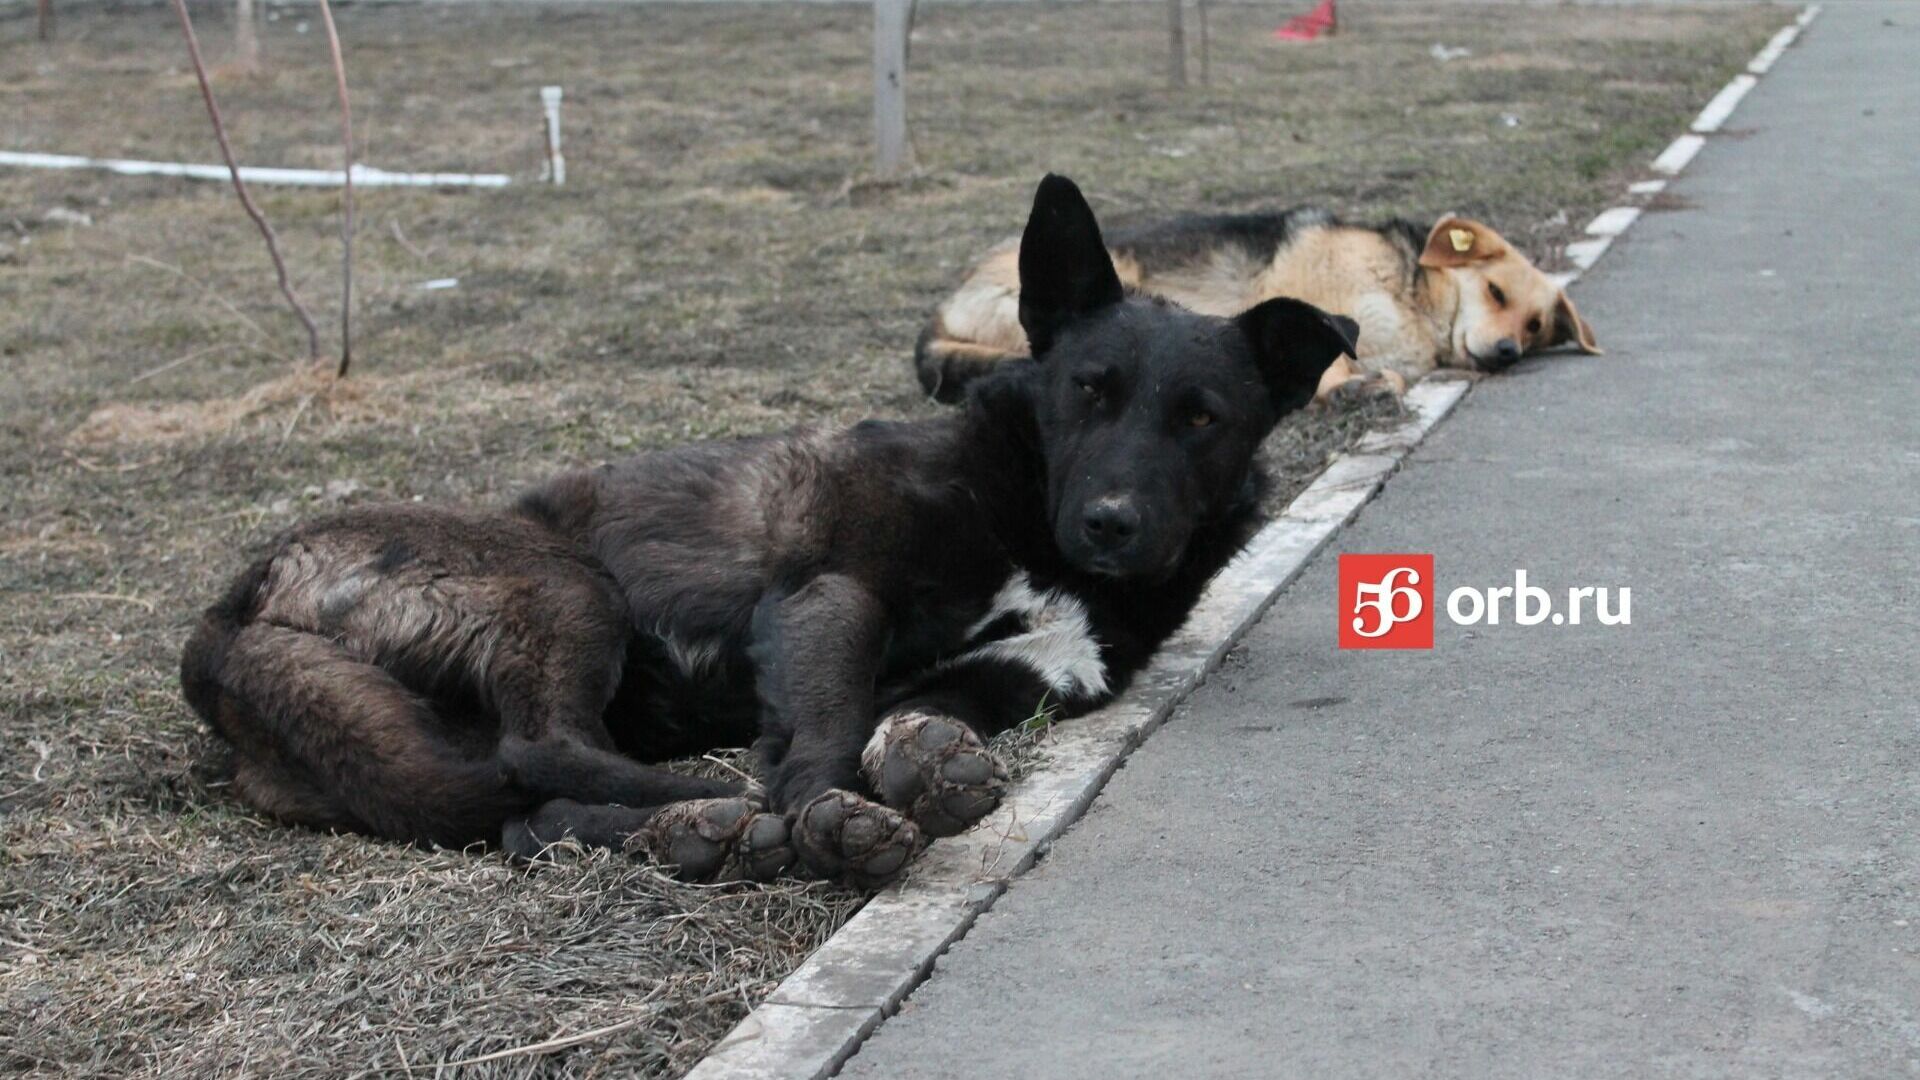 Жители Оренбурга обратятся к президенту с просьбой изменить закон о животных